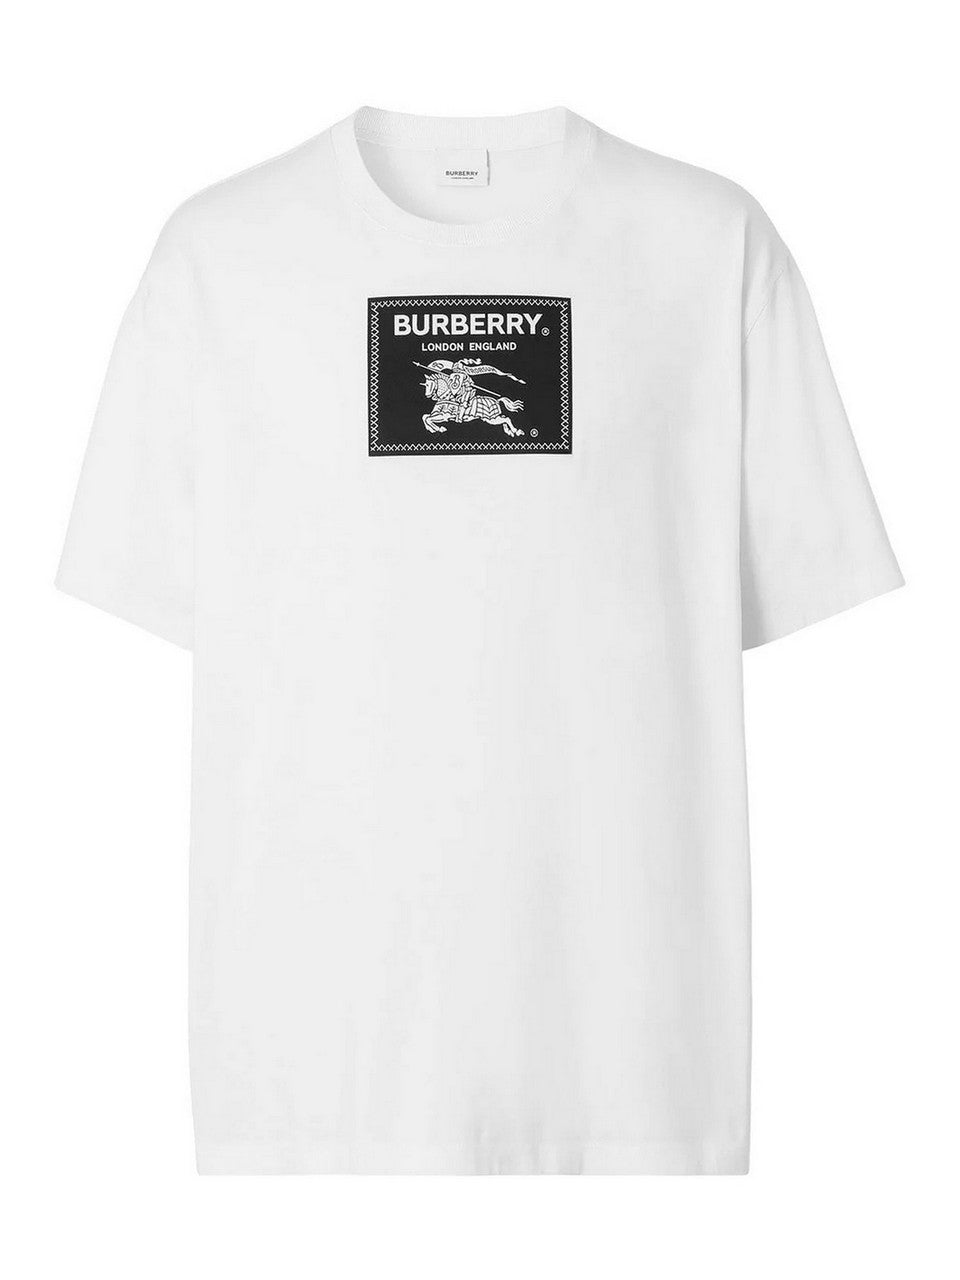 T-Shirt Burberry 80651871005 in cotone con etichetta-logo